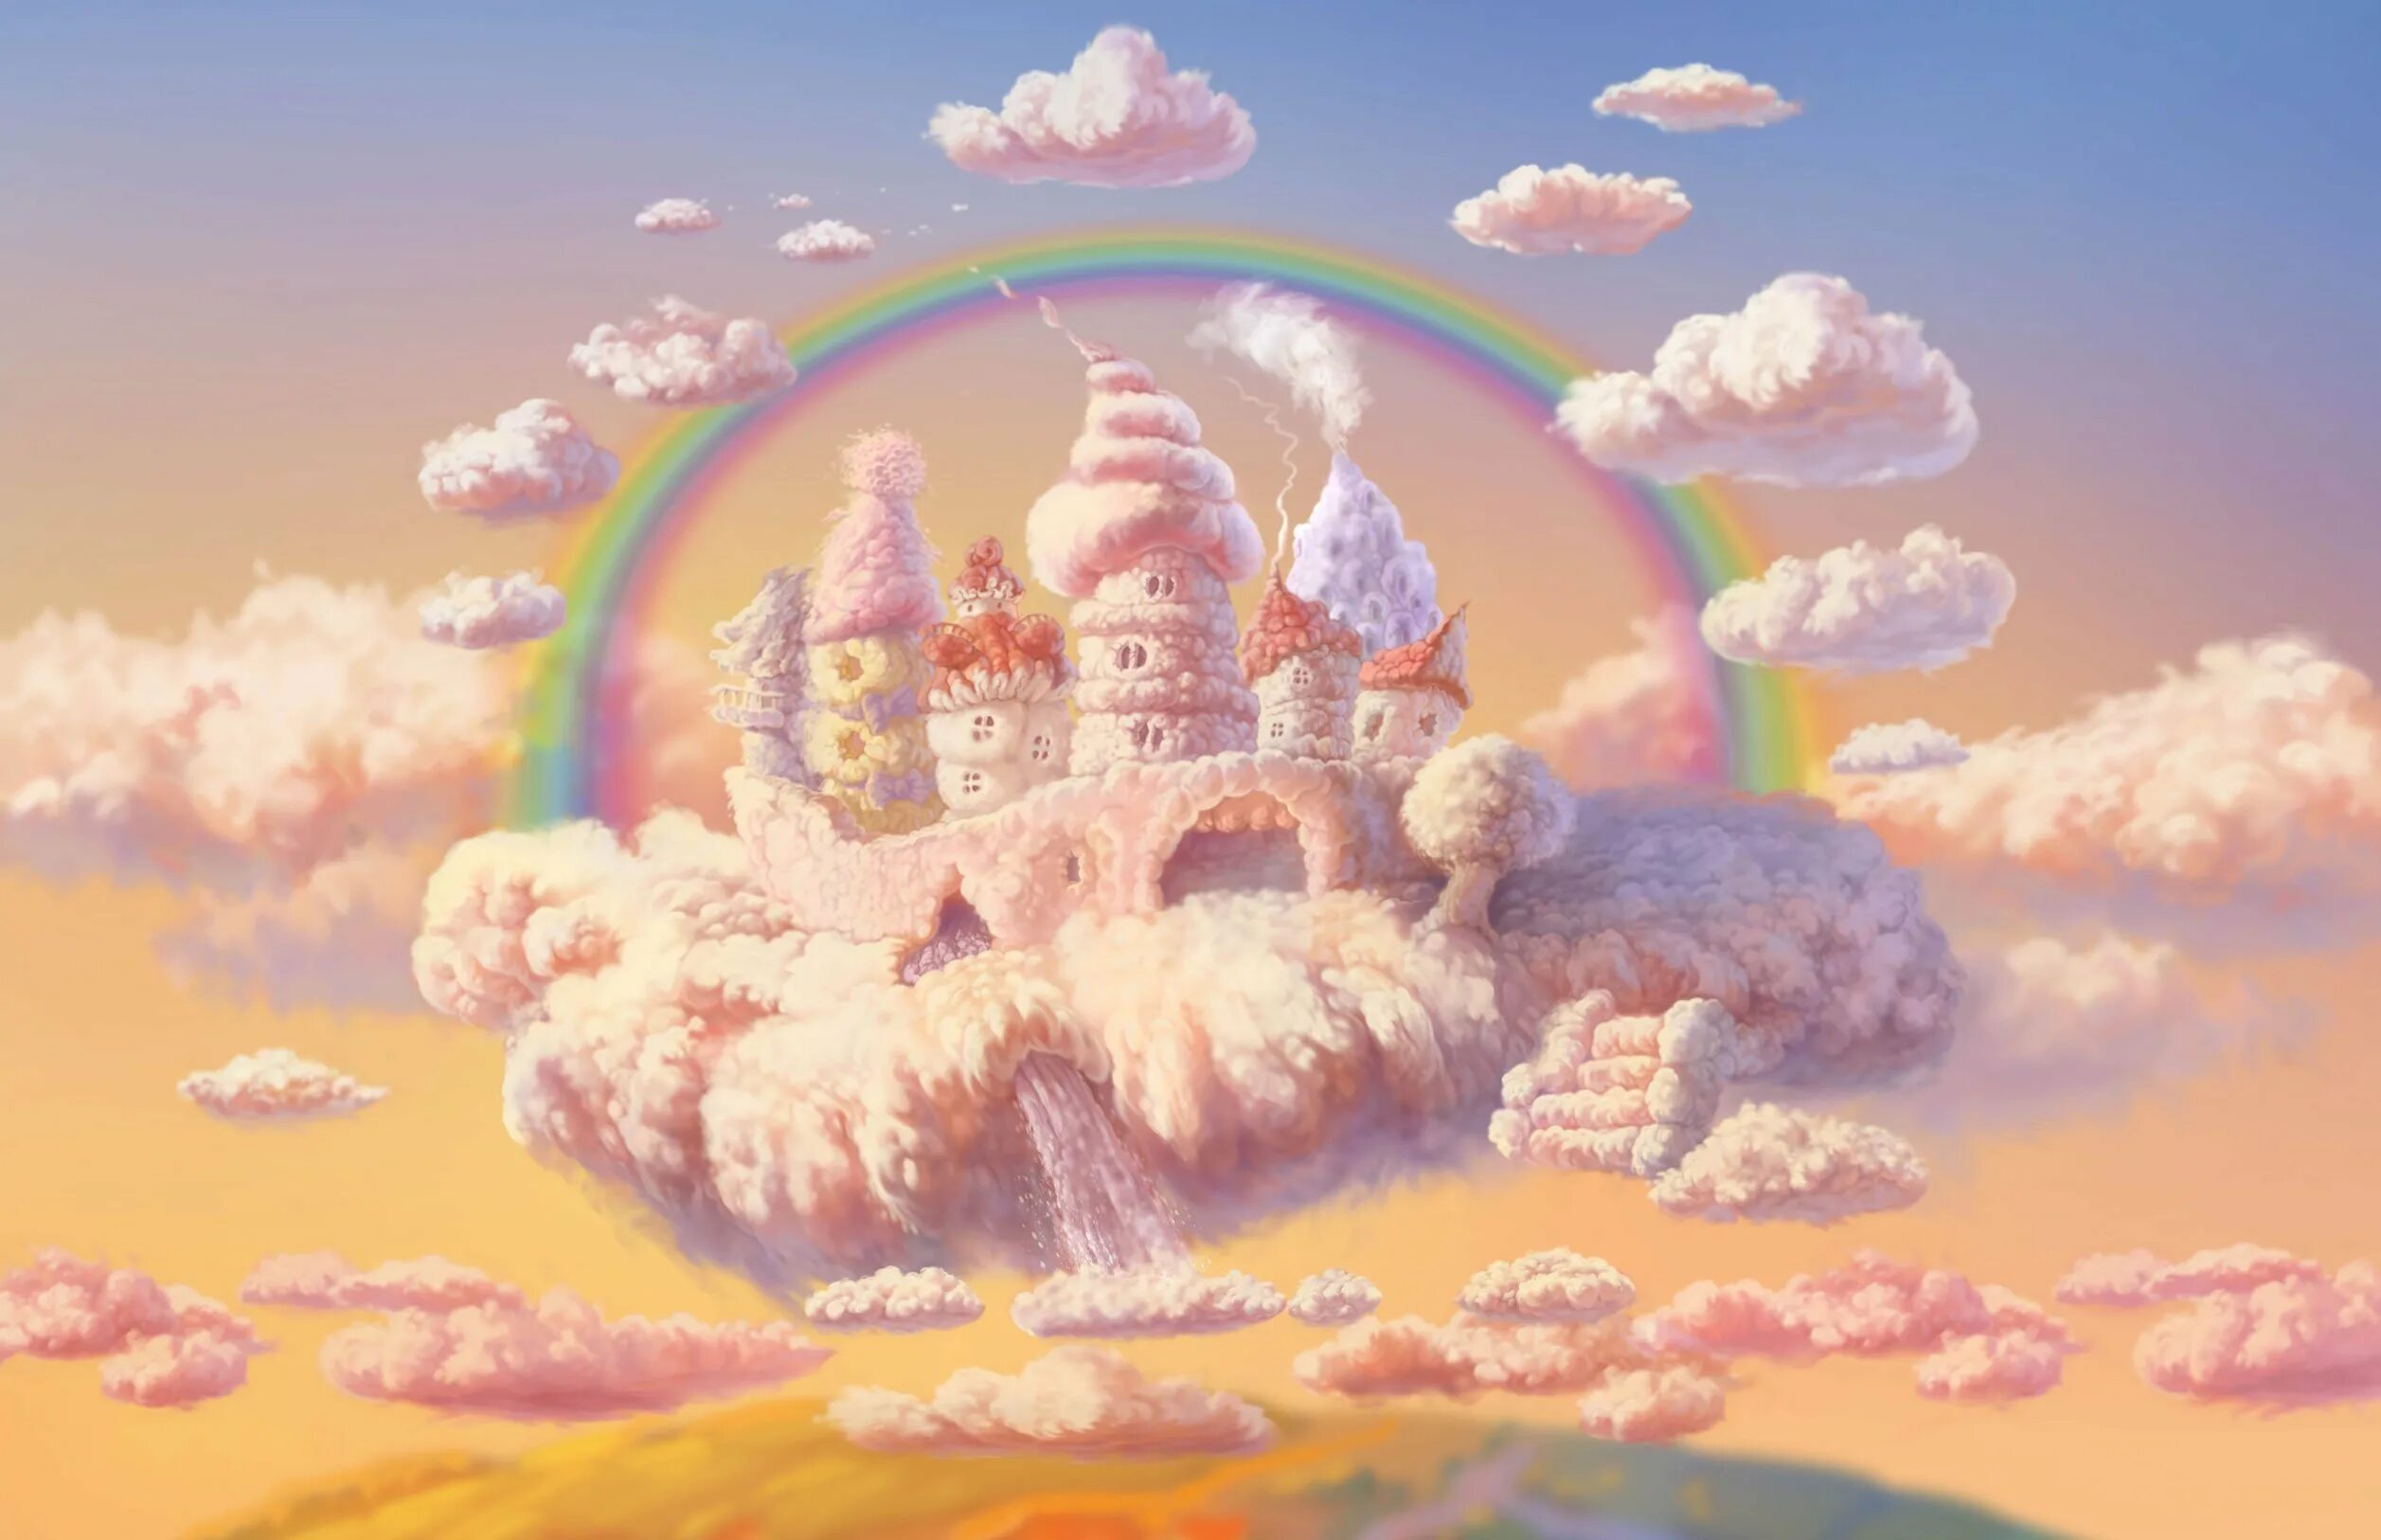 Картинка сказочная страна. Воздушный замок. Сказочная Страна. Сказочное небо. Сказочный замок в облаках.